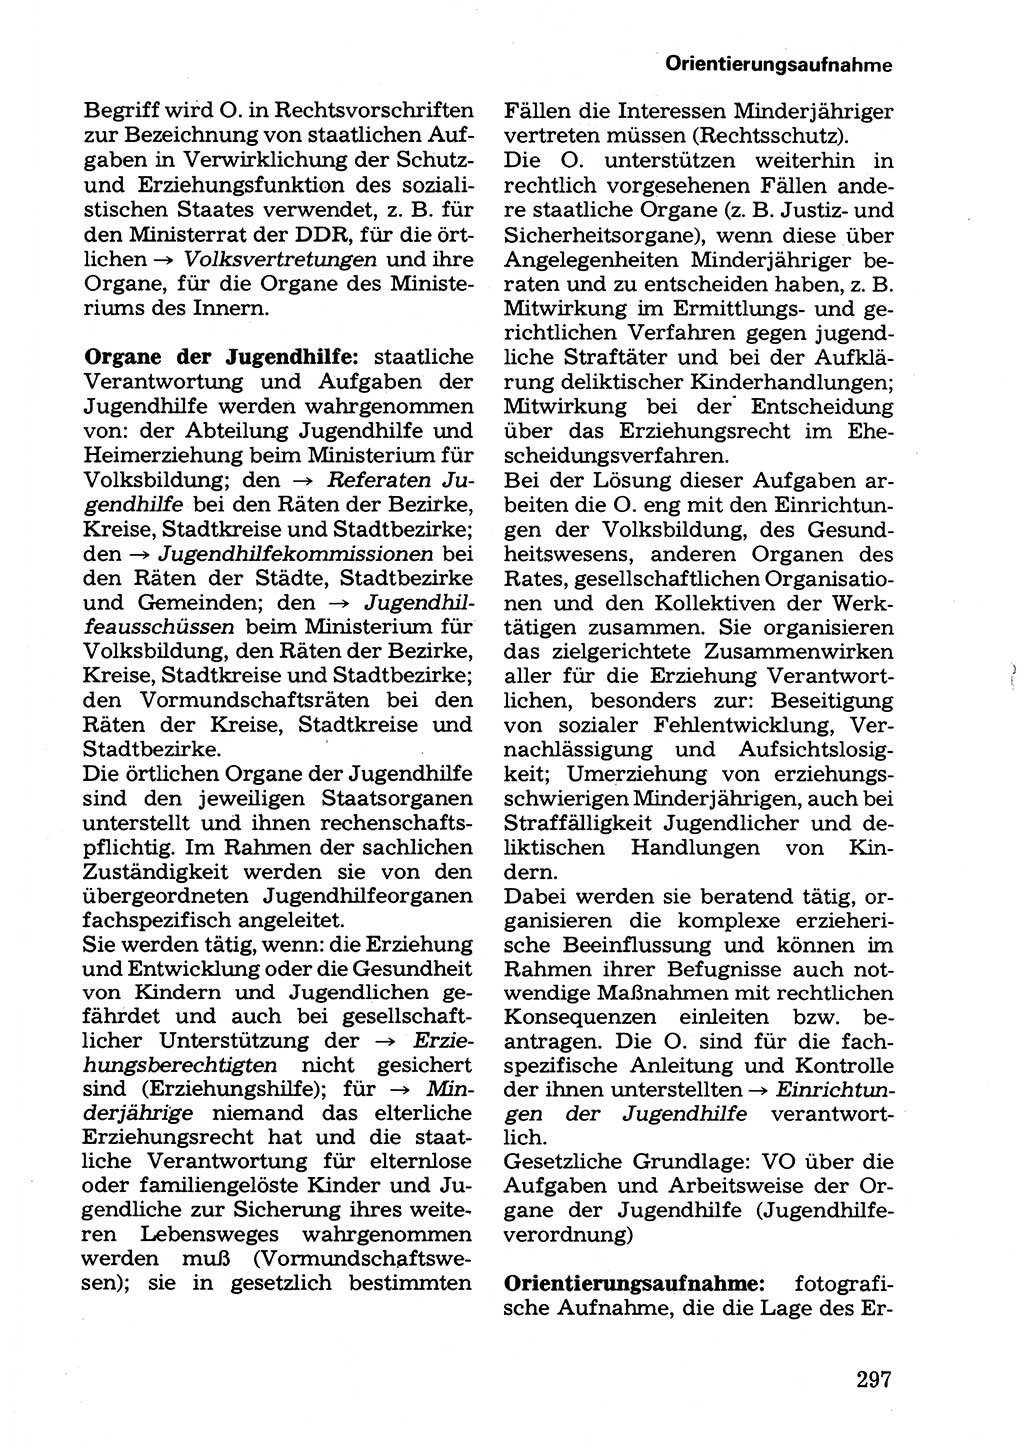 Wörterbuch der sozialistischen Kriminalistik [Deutsche Demokratische Republik (DDR)] 1981, Seite 297 (Wb. soz. Krim. DDR 1981, S. 297)